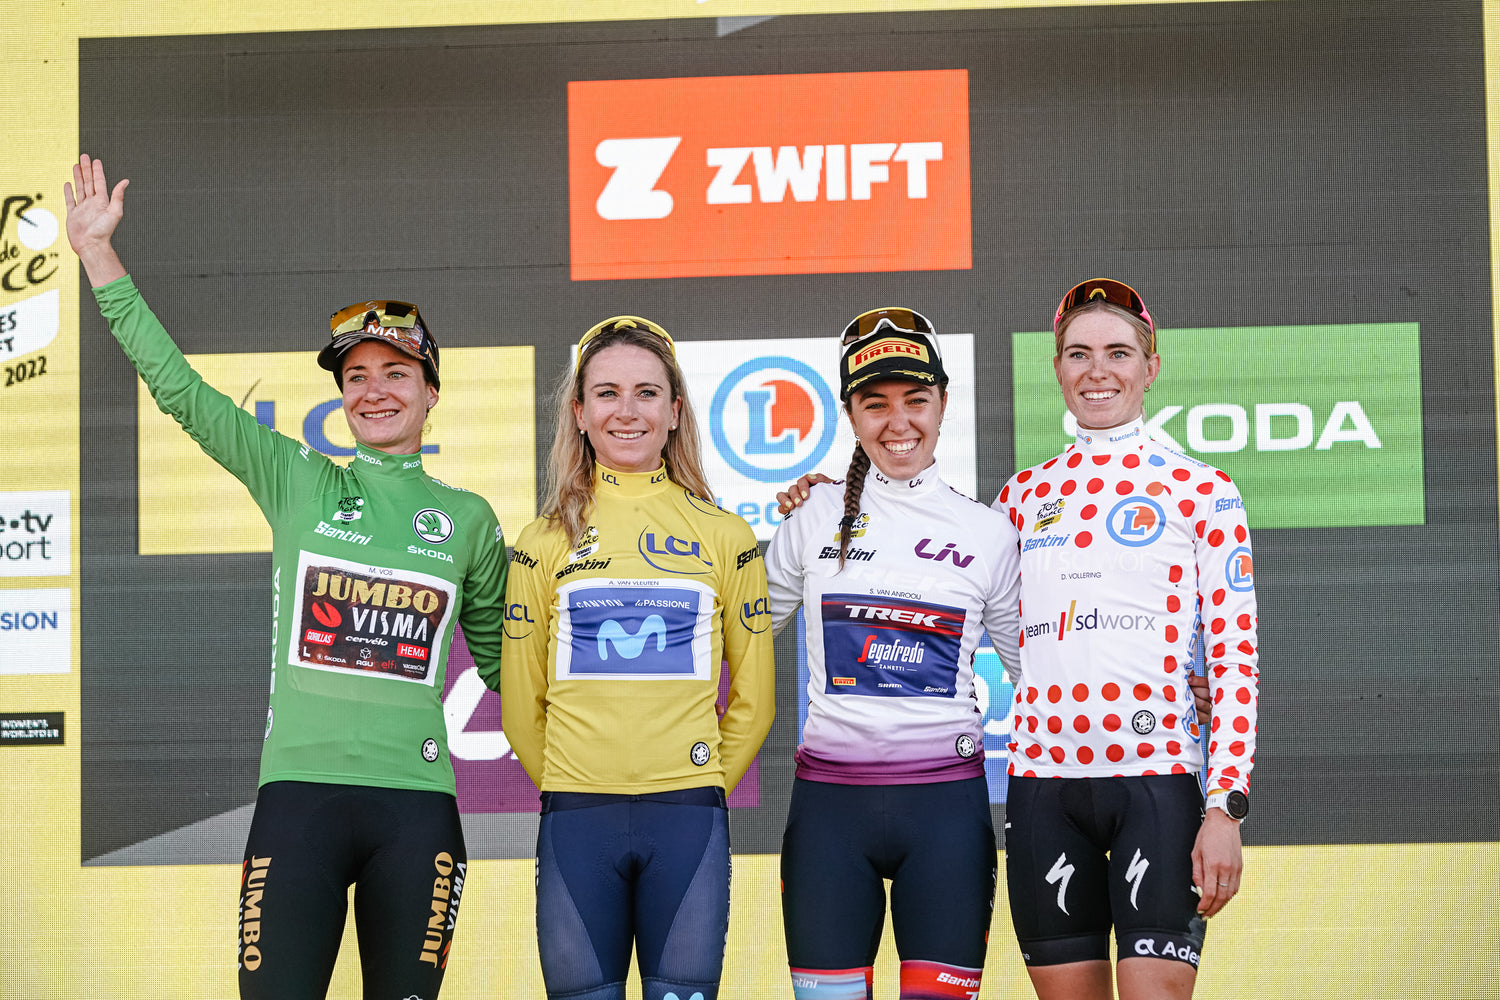 Tour de France Femmes guide jerseys